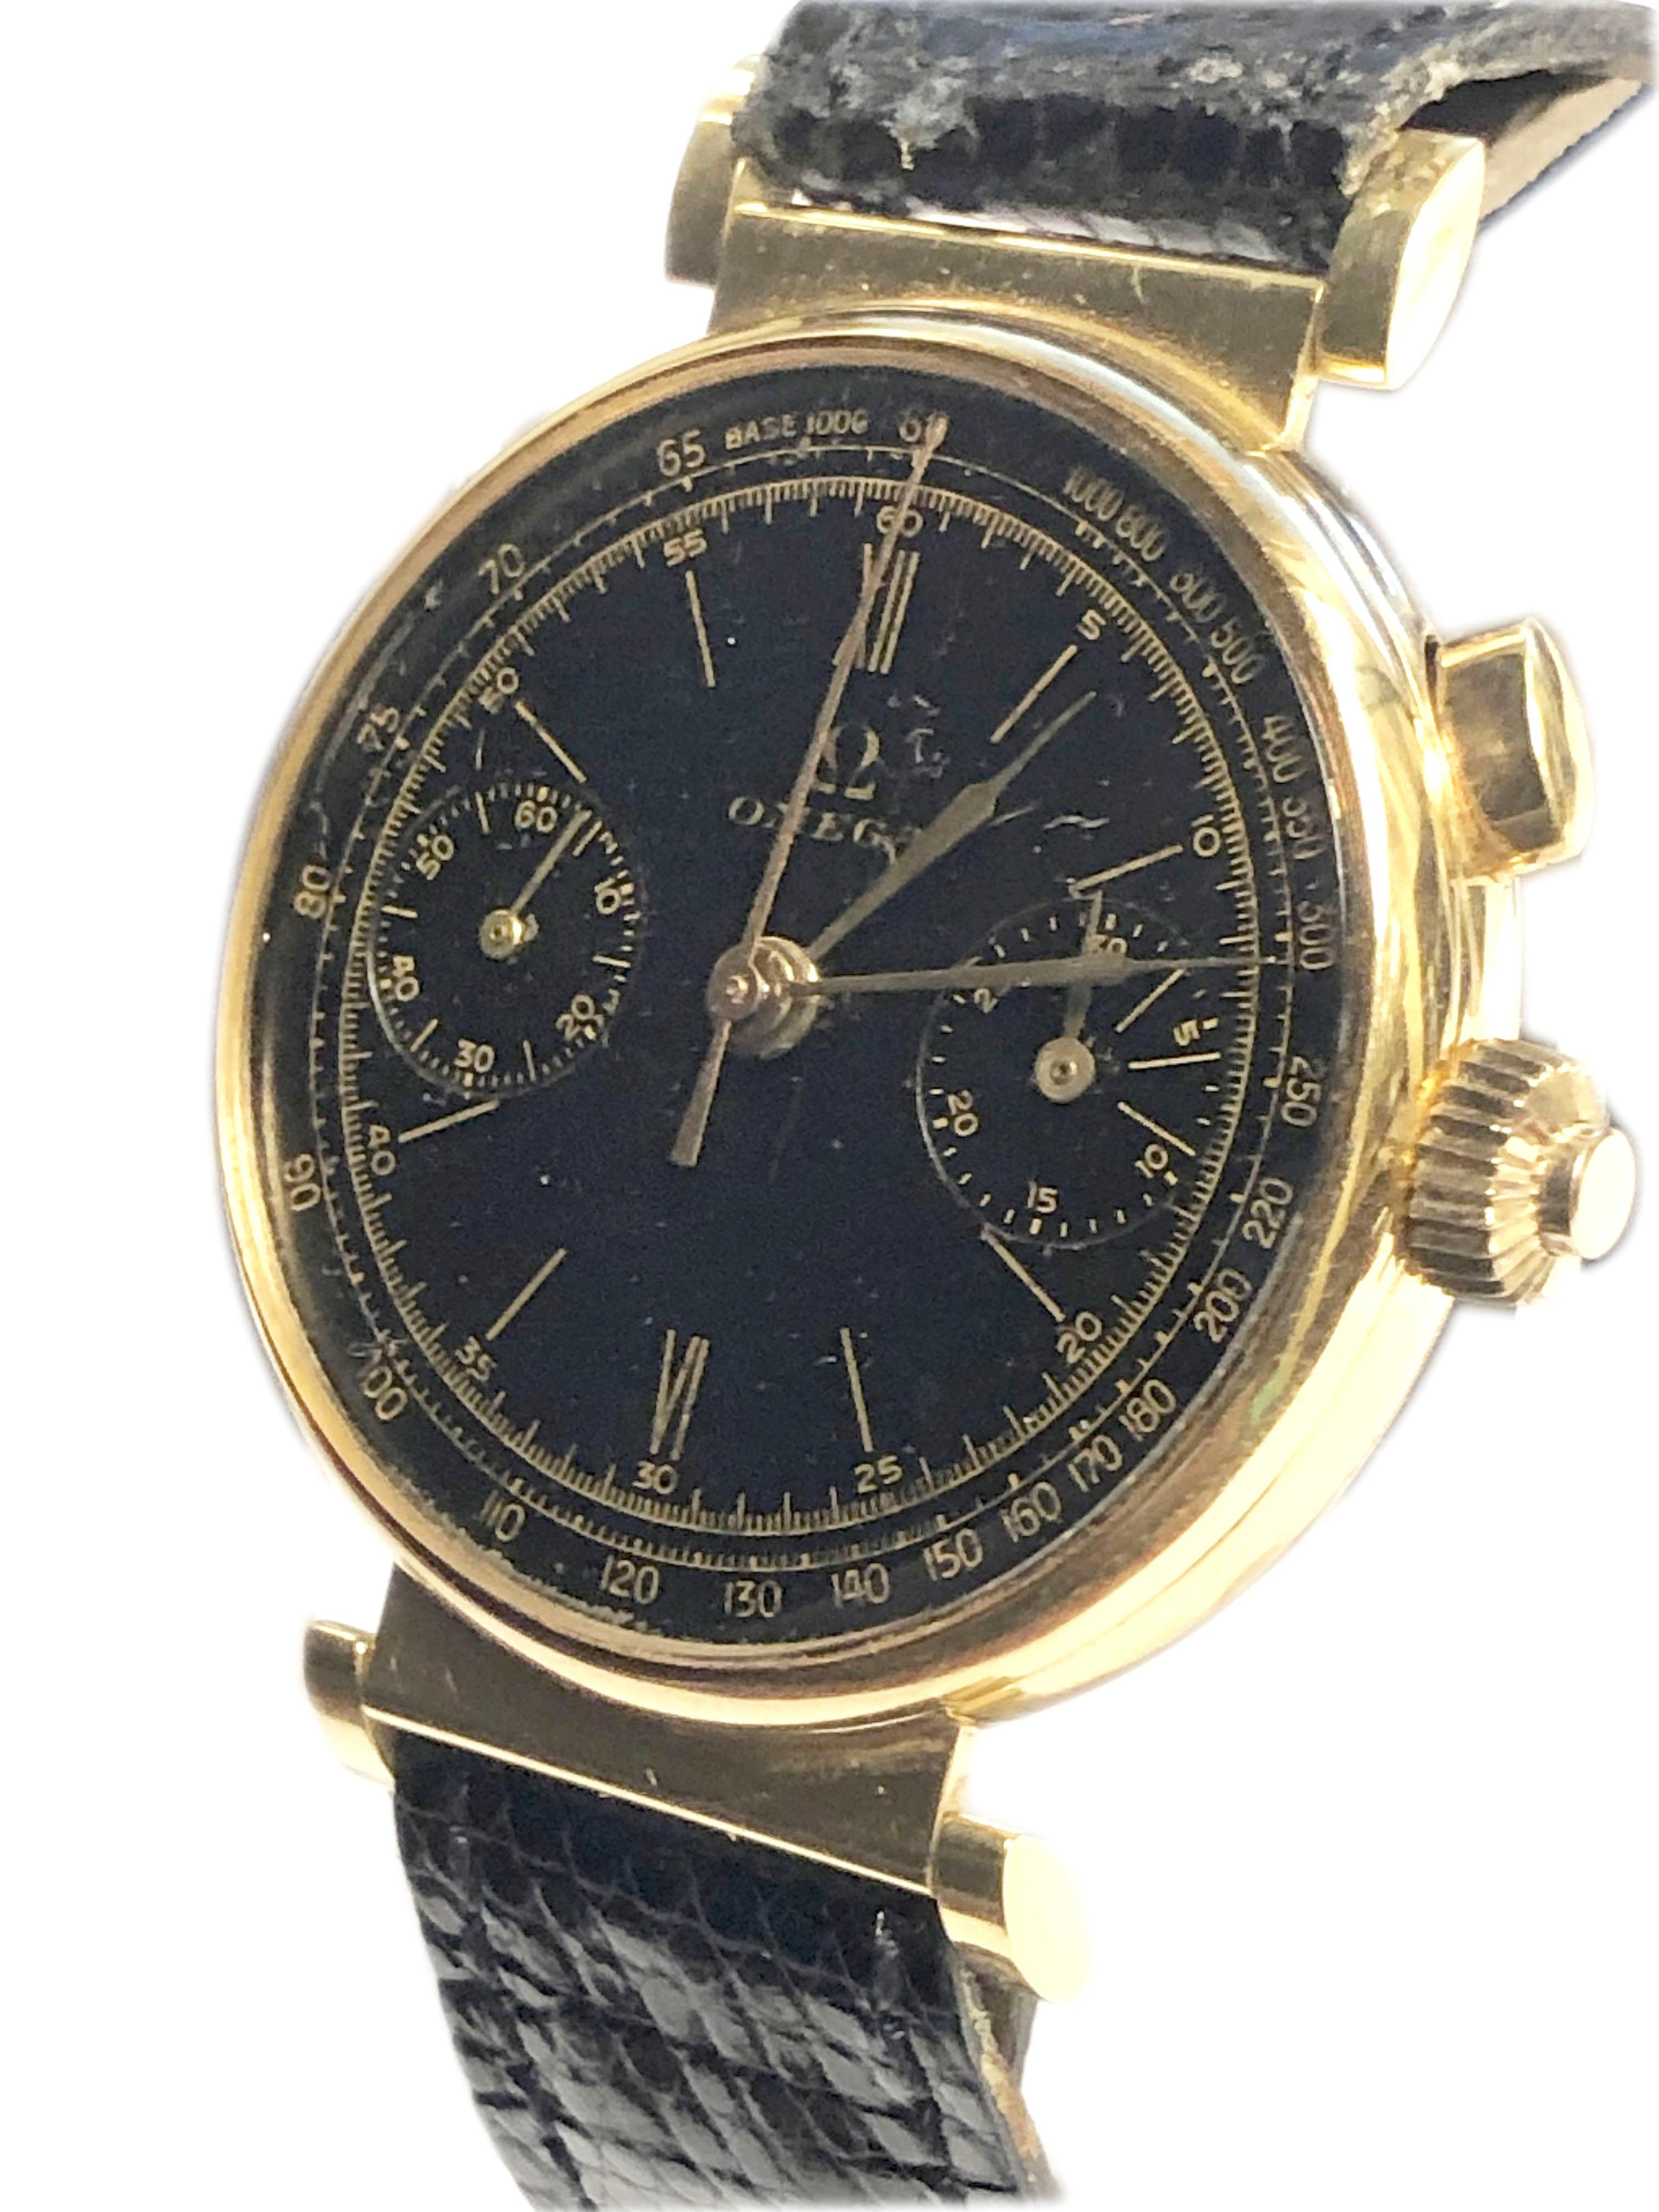 Circa 1930s Omega Chronograph Wrist Watch, 18K Rose Gold 37 M.M. 3 pièces signé Omega avec des cornes flexibles. mouvement 17 rubis à levier en nickel et doré, 2 fonctions de chronographe à registre actionnées par un seul bouton avec fonction Fly